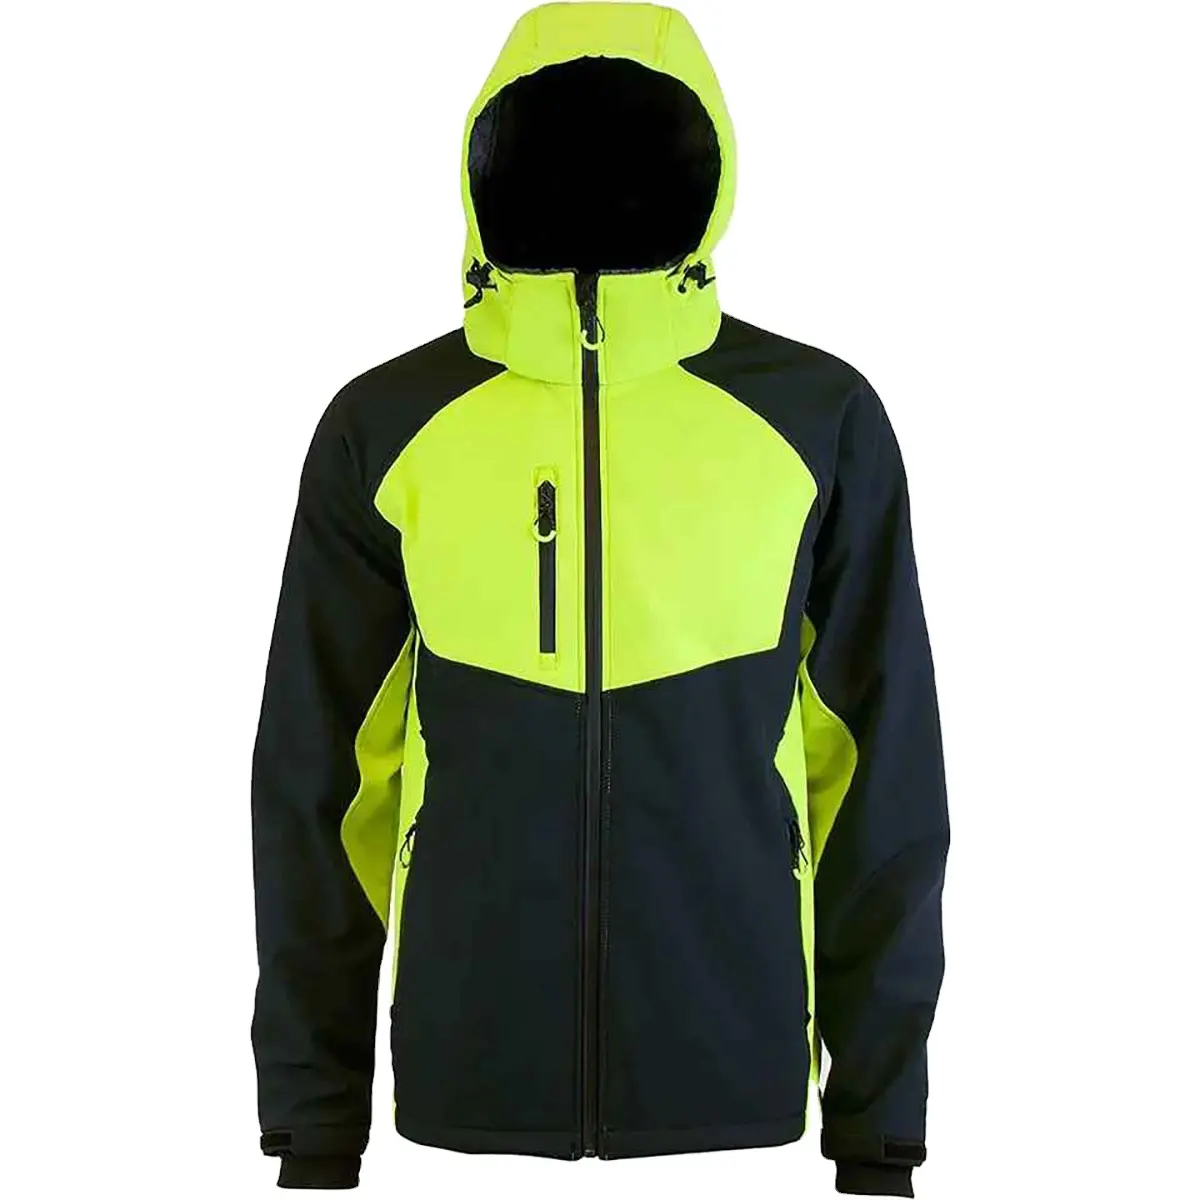 소프트 쉘 재킷 남성용 고품질 재킷 저렴한 가격의 남성용 방수 재킷